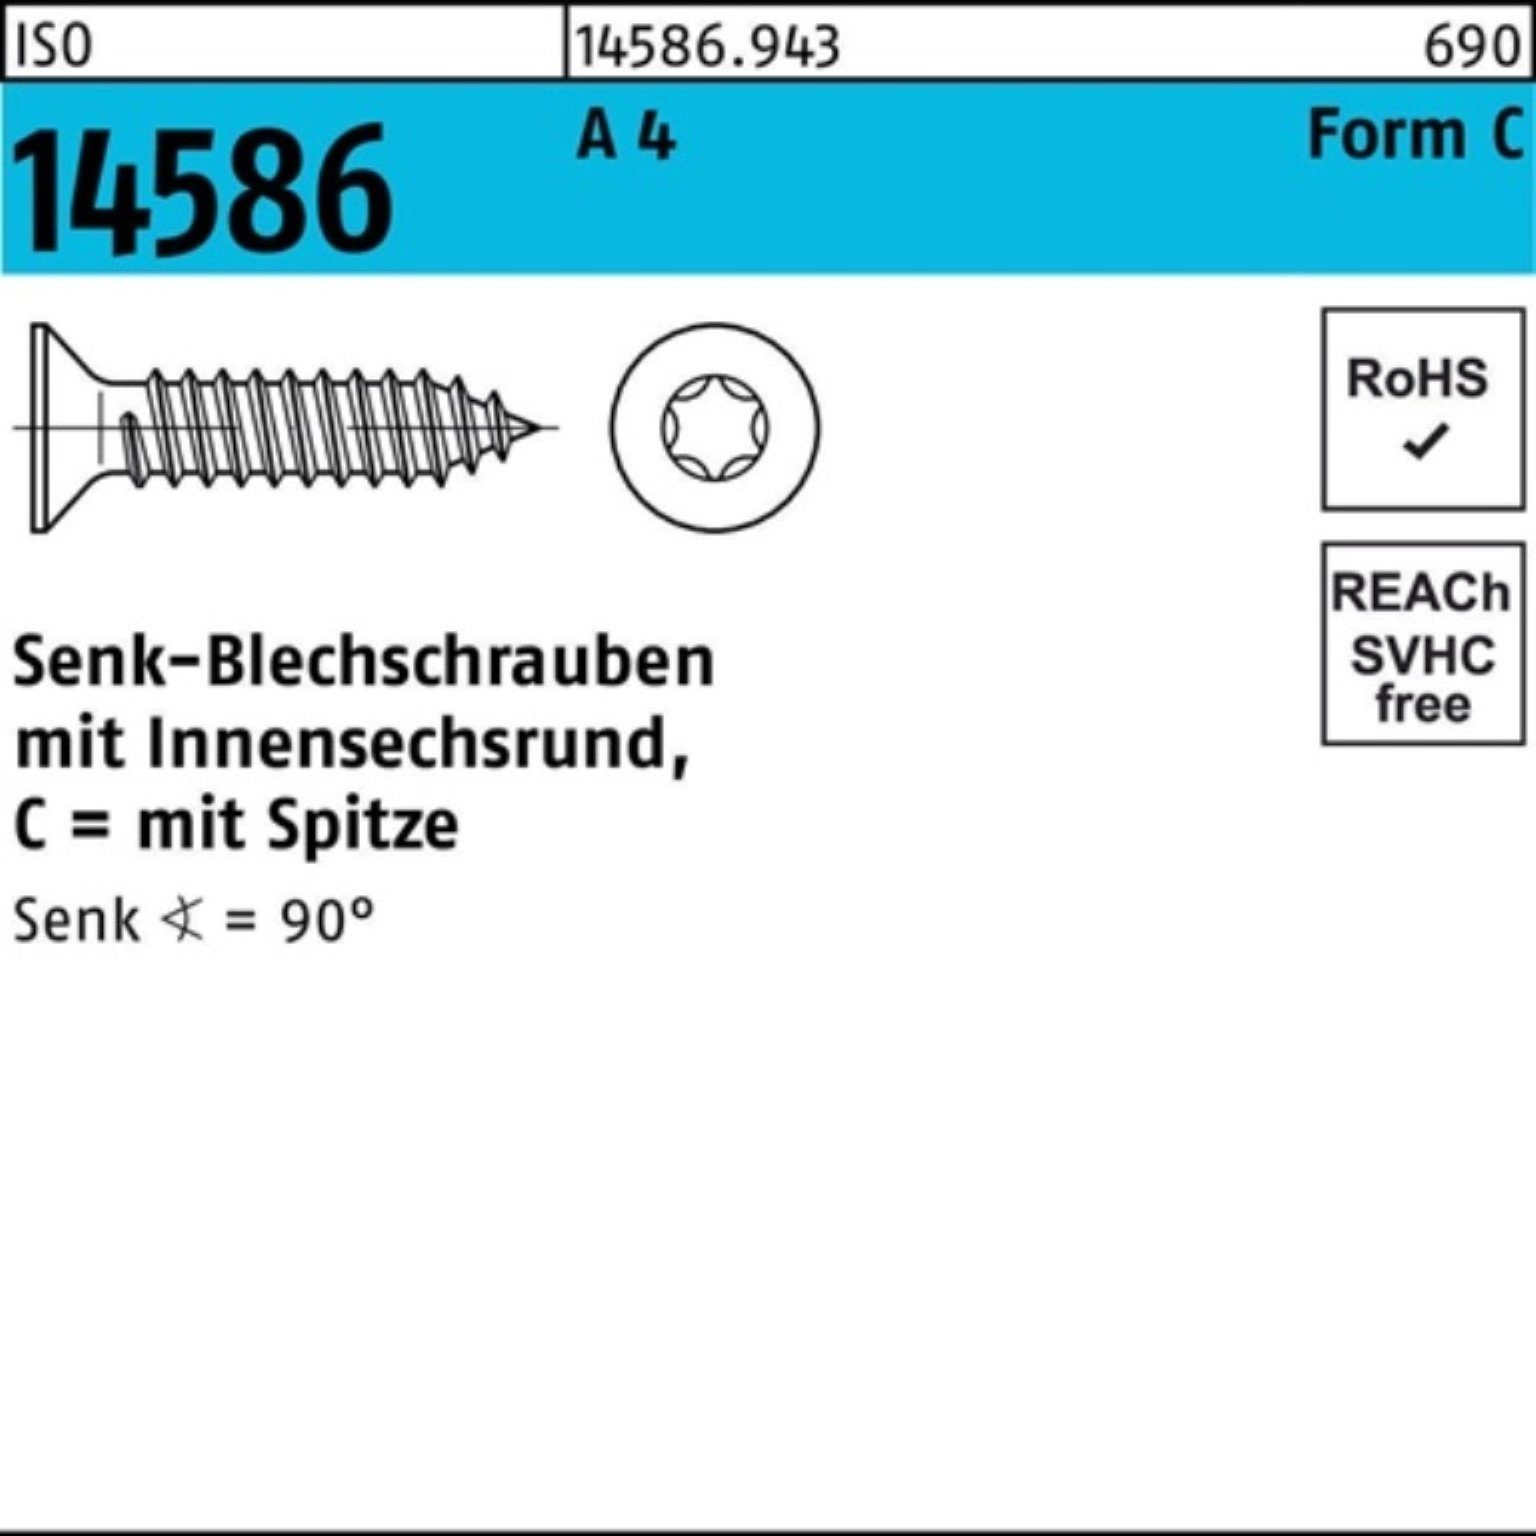 Reyher Schraube 500er Pack Senkblechschraube ISO 14586 ISR/Spitze 4,8x 9,5-T25 A 4 500